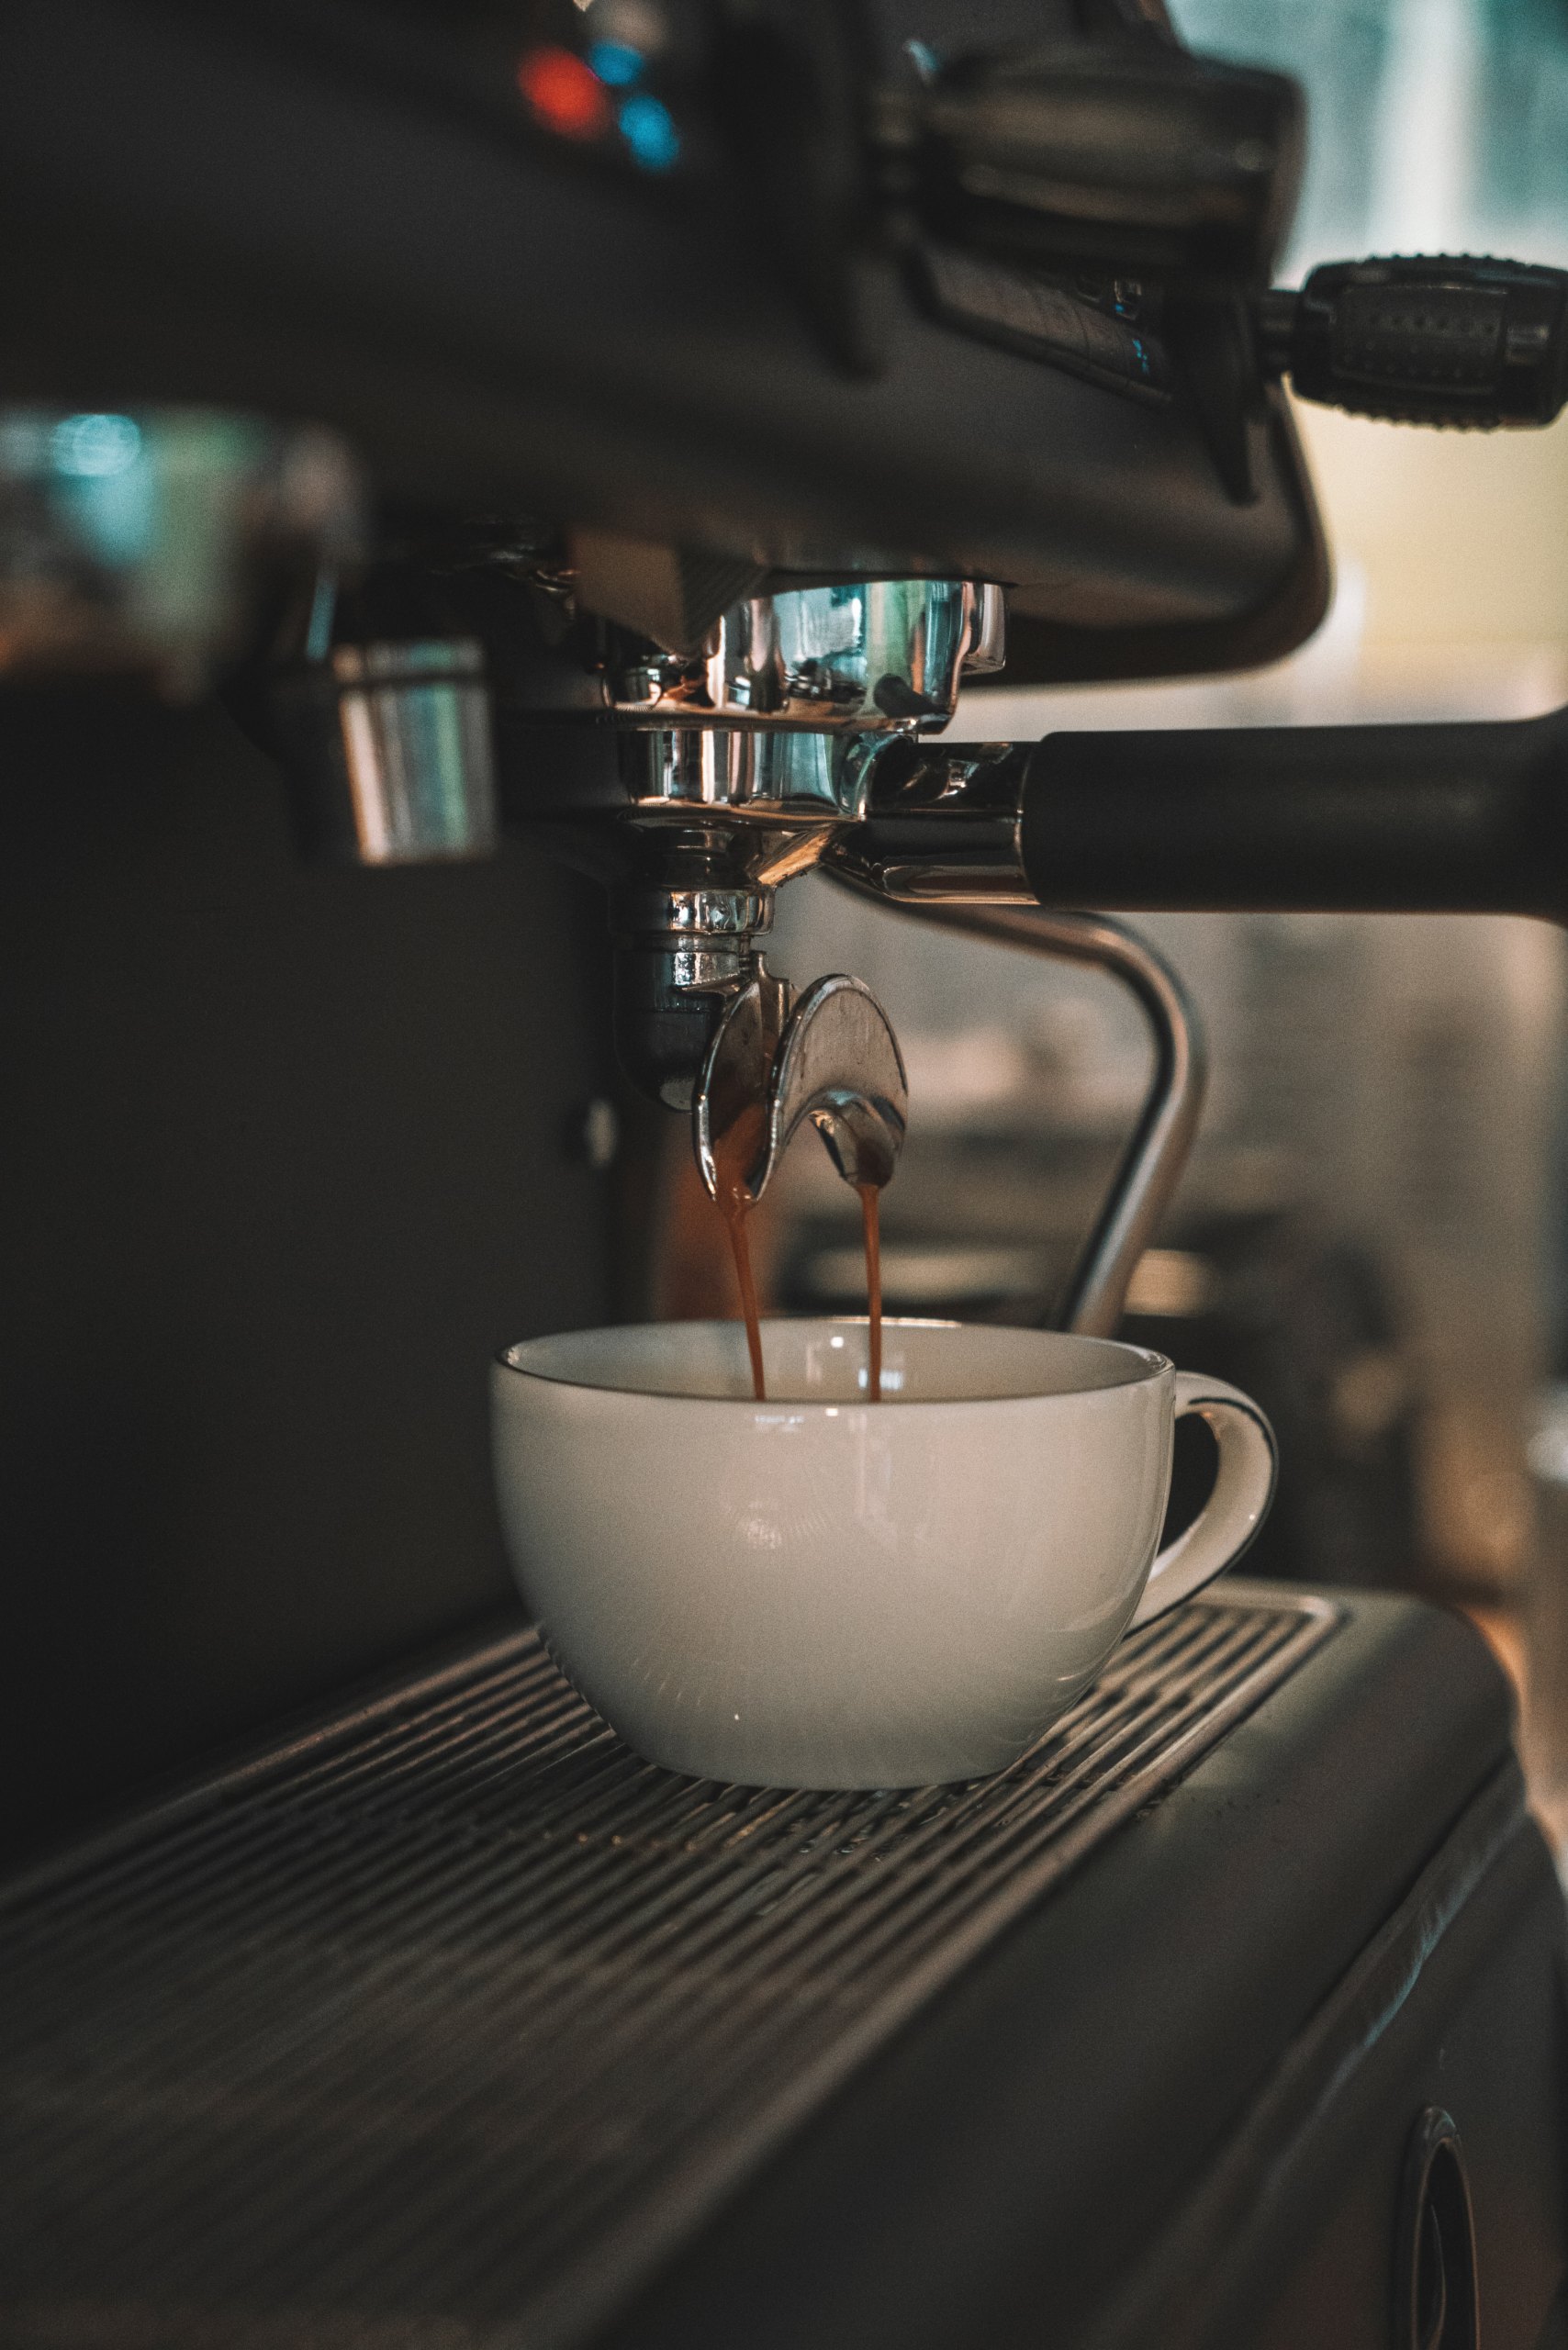 Mantenimiento diario de tu máquina espresso